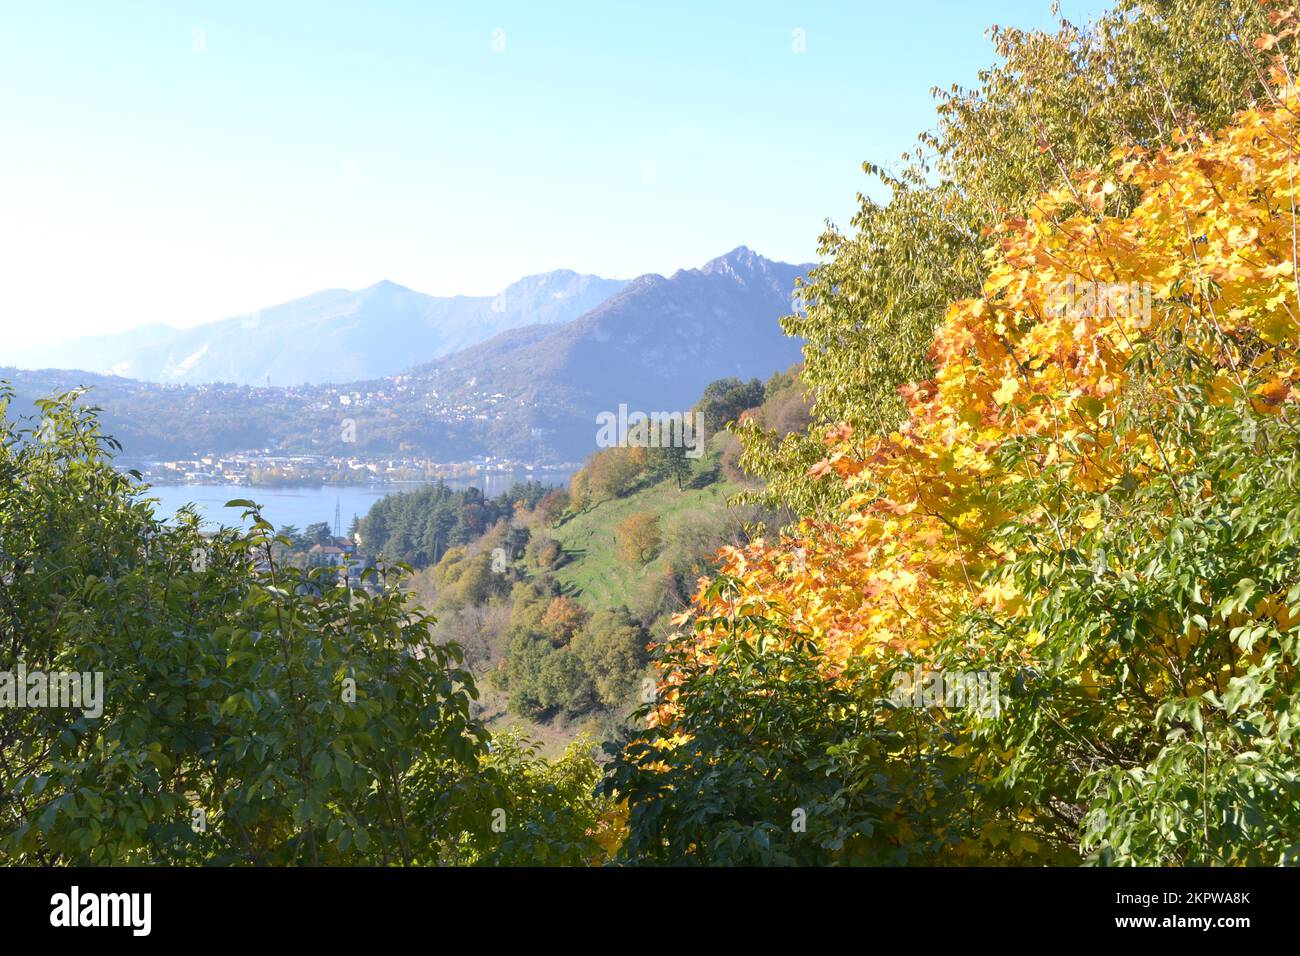 Wunderschöne Herbstlandschaft in den Bergen mit Bäumen im Vordergrund und vielfältigen Hügellinien. Unschärfe der Berge und des Sees im Hintergrund Stockfoto